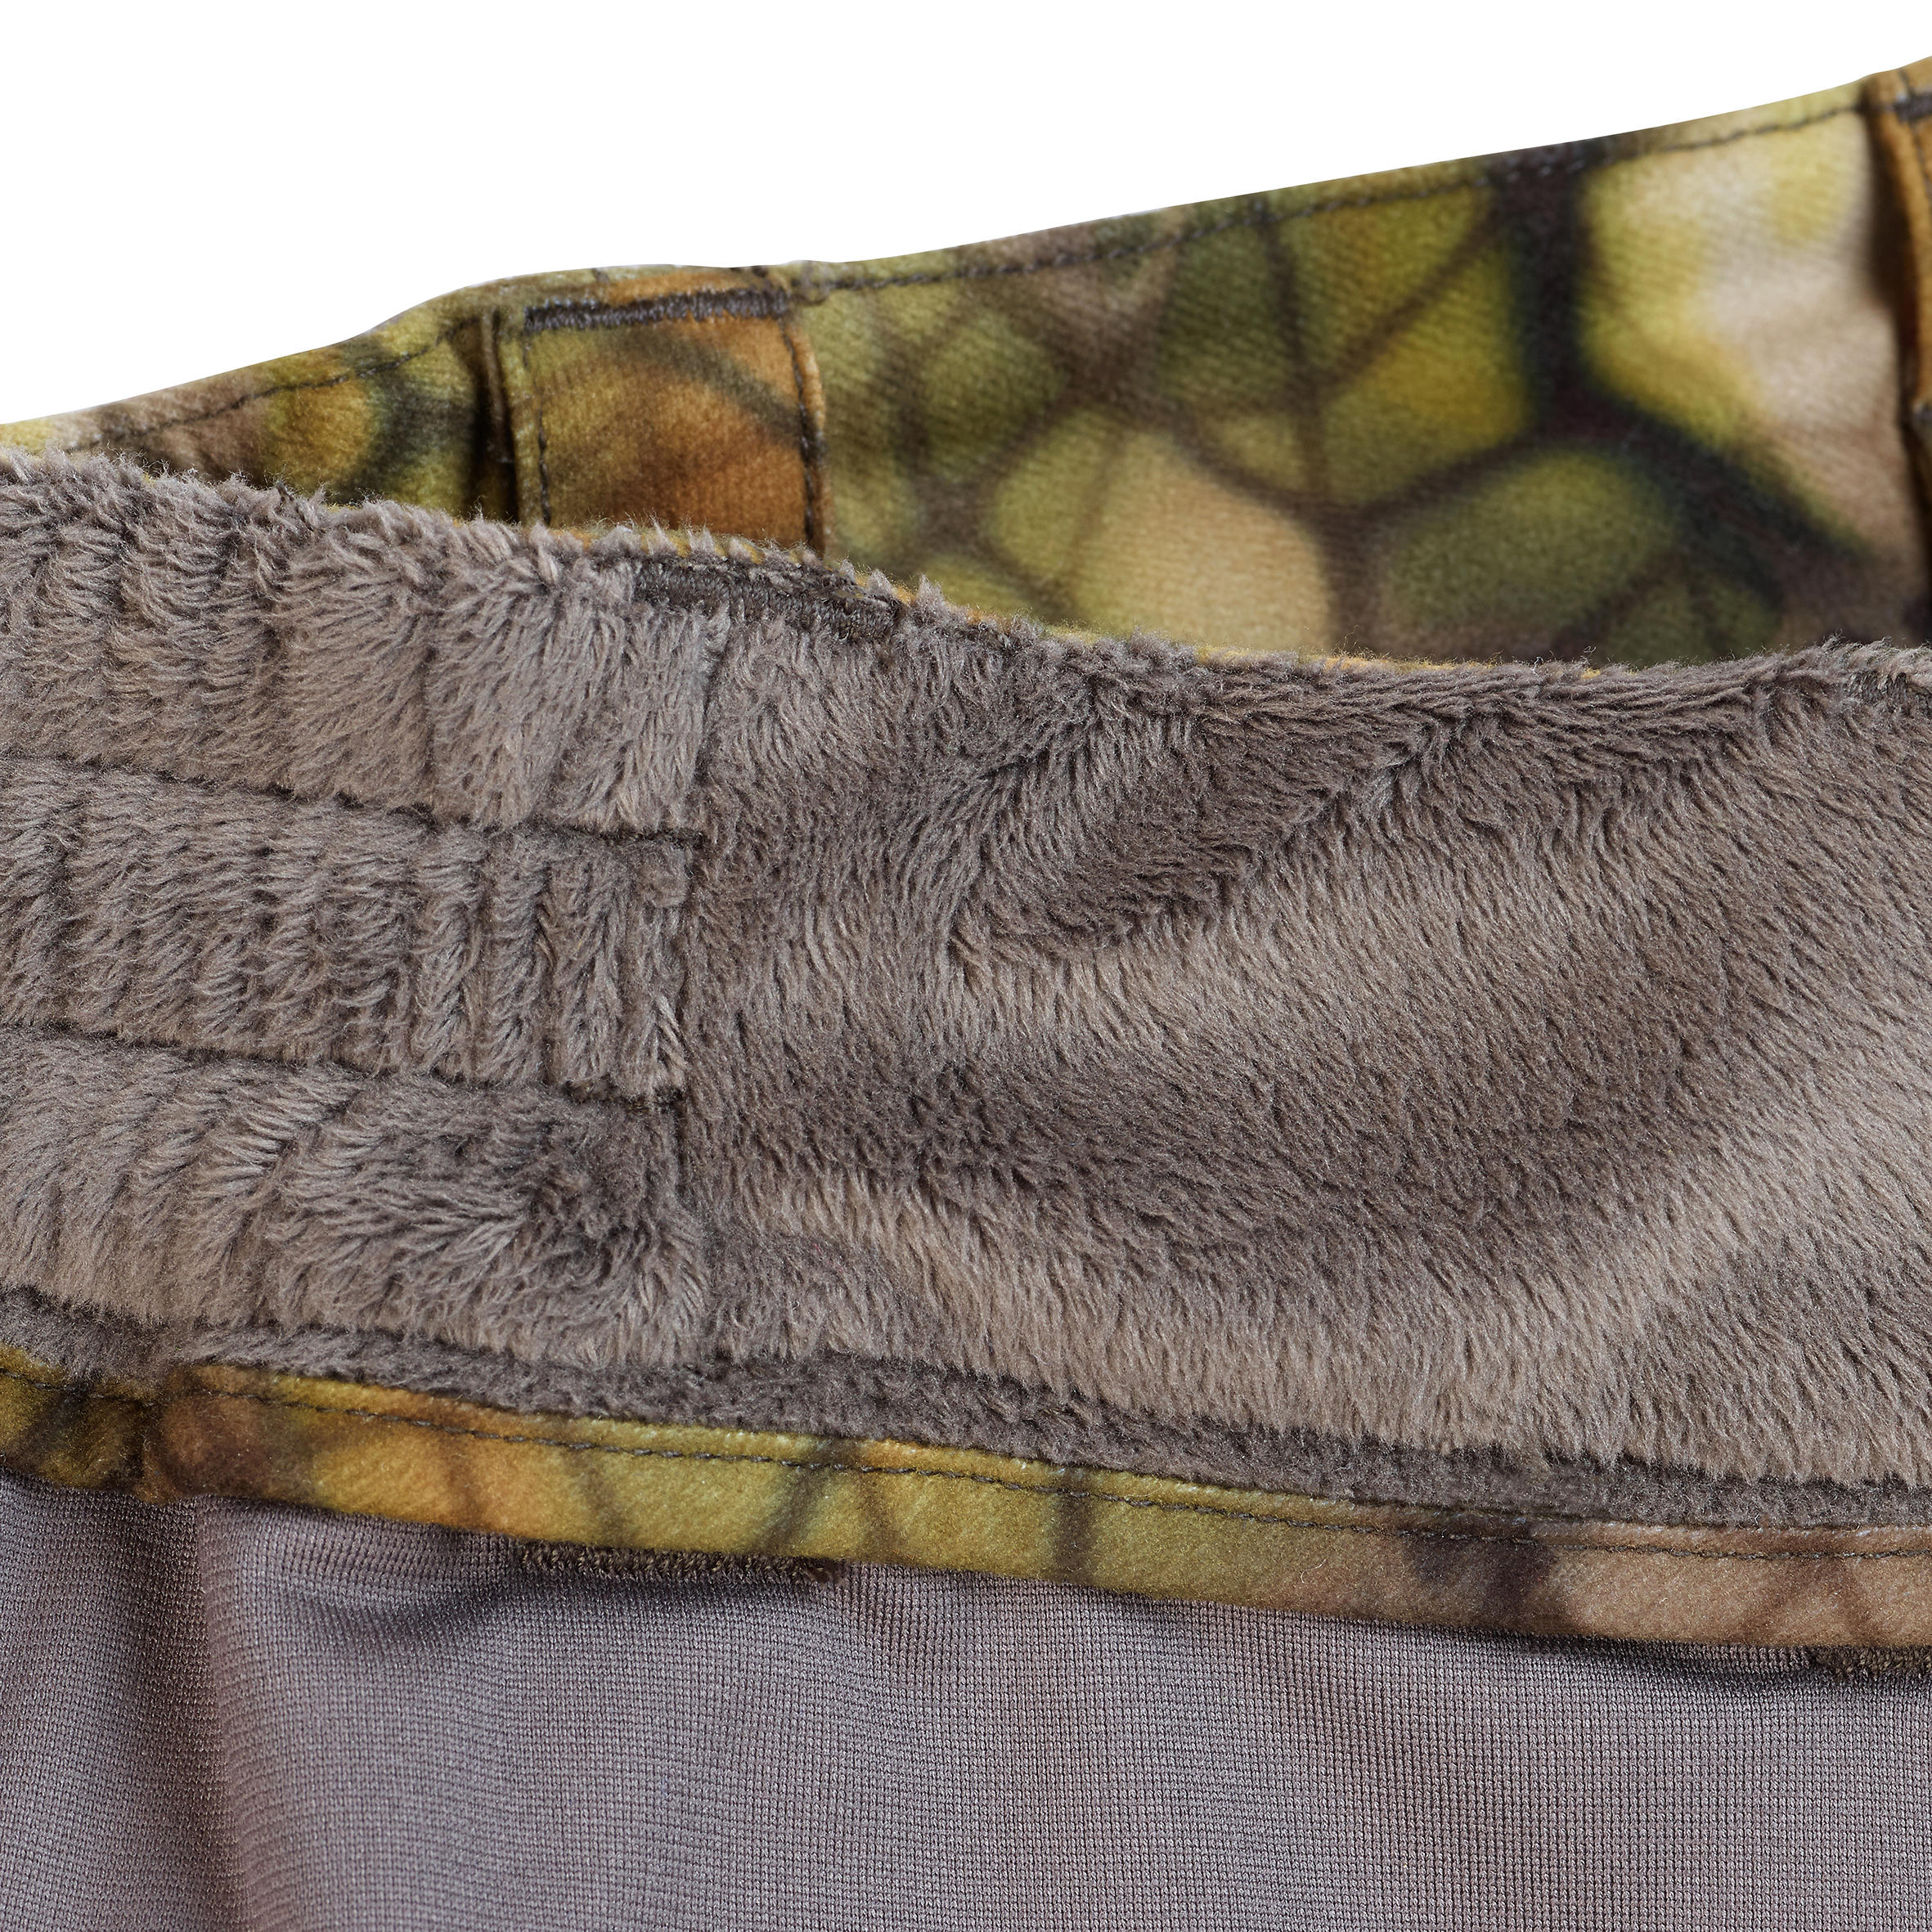 Pantalon chasse Silencieux Imperméable Chaud 900 camouflage FURTIV - SOLOGNAC